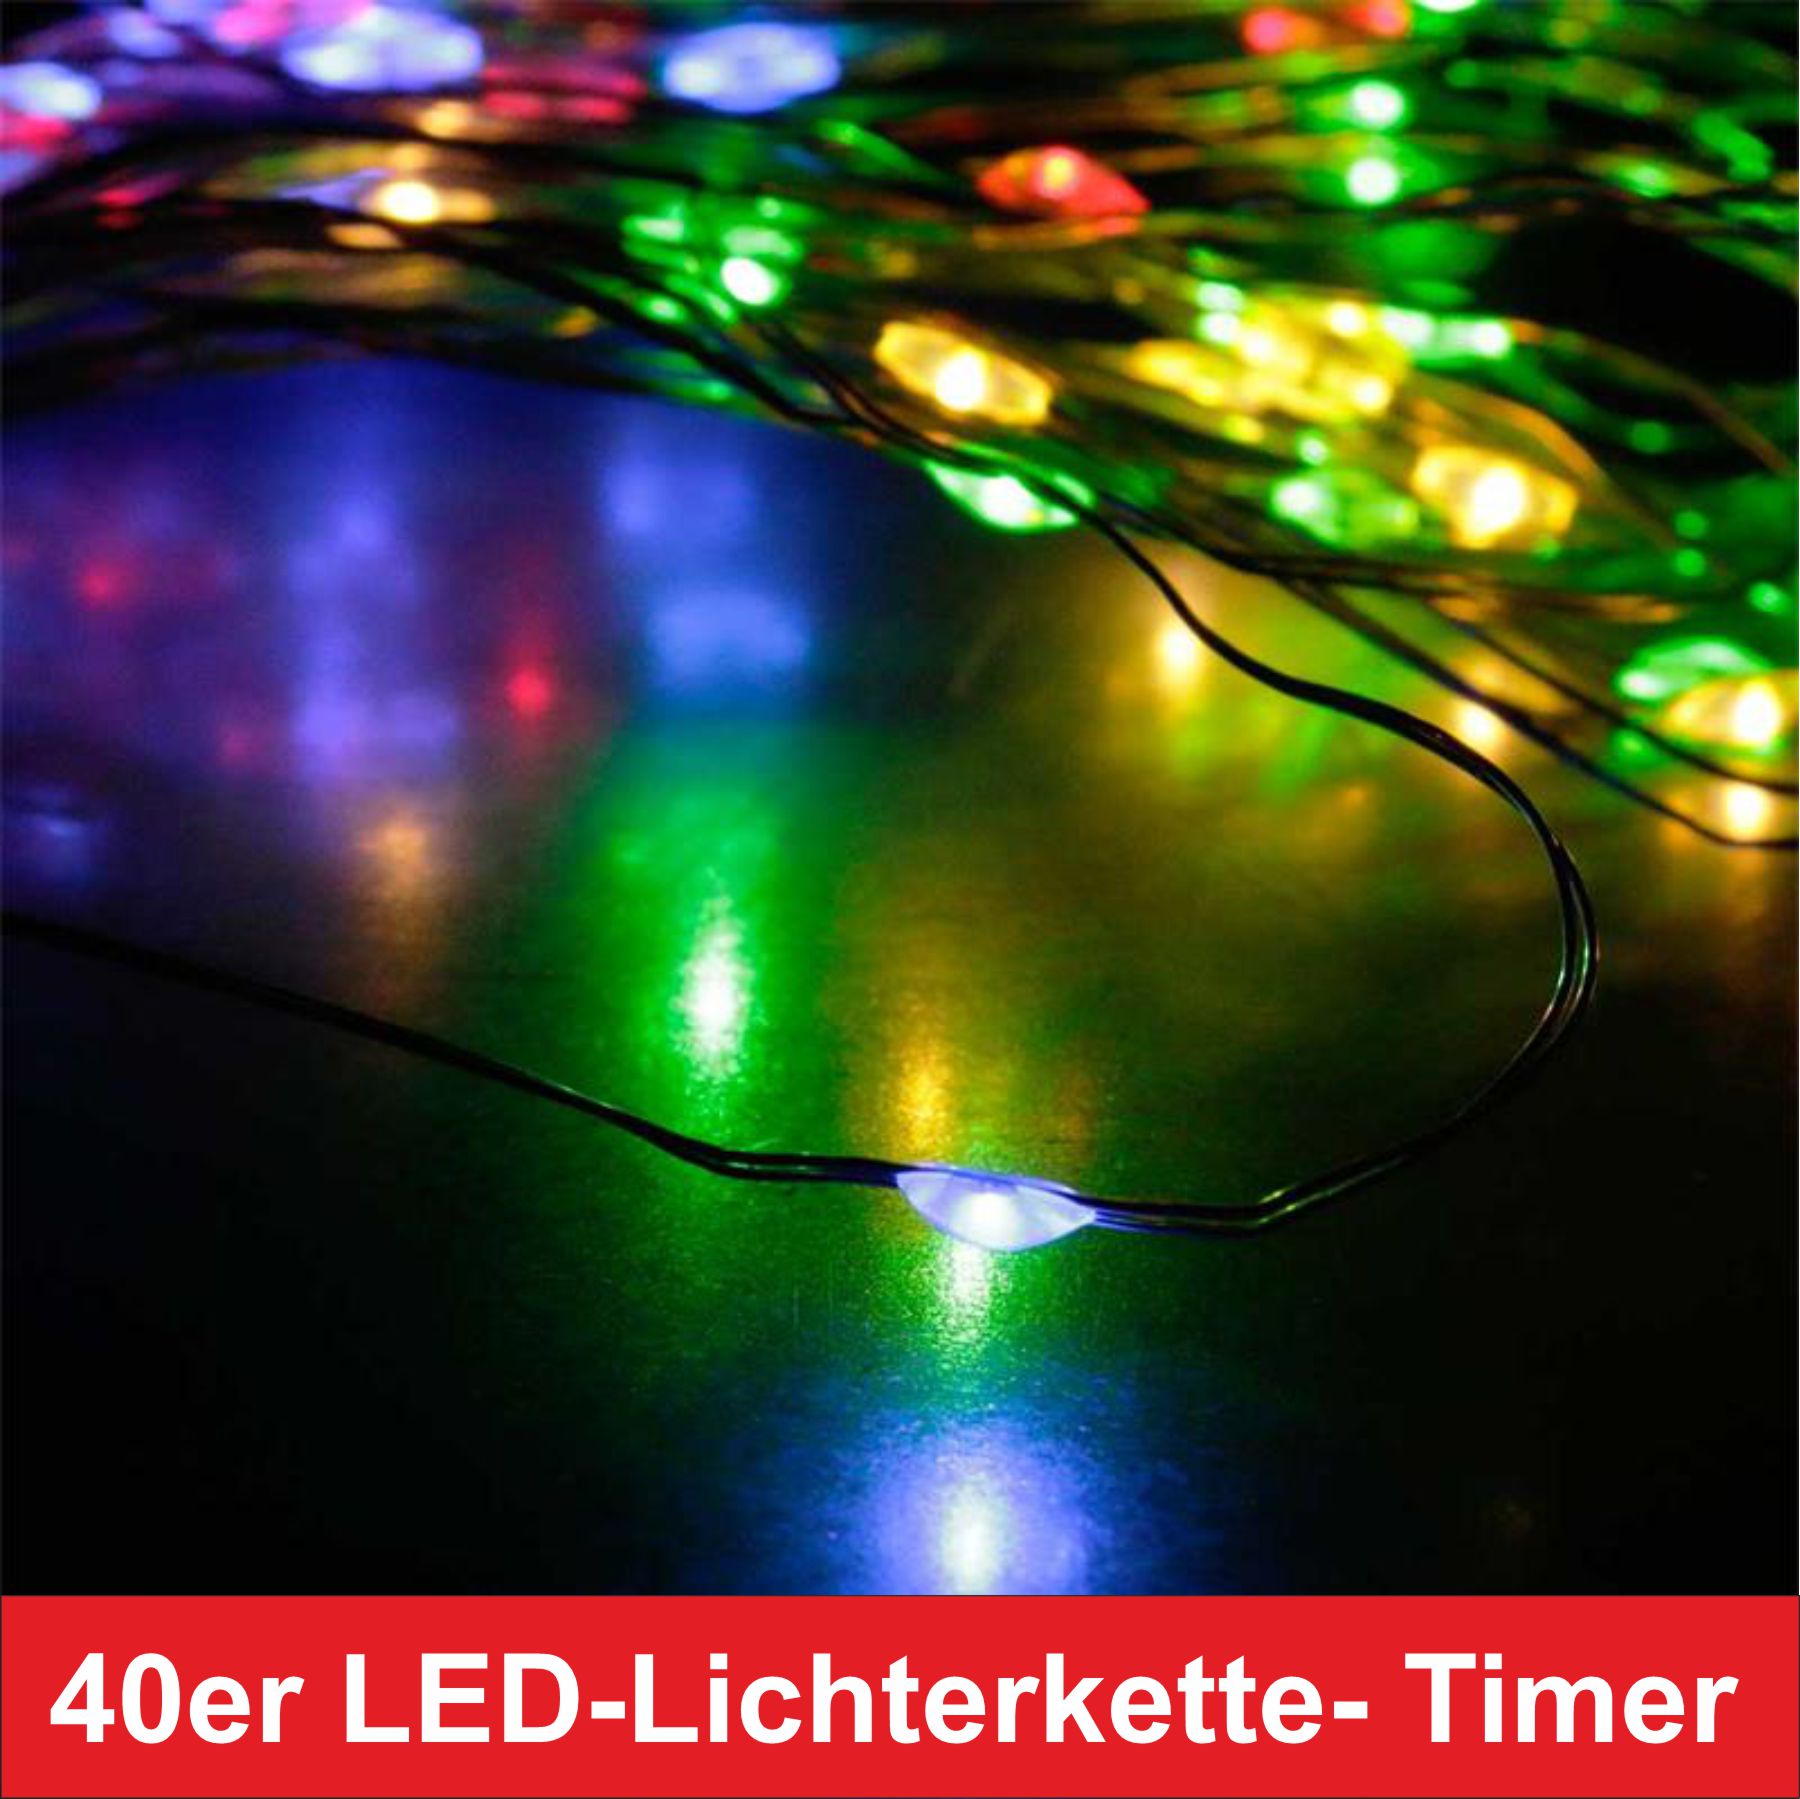 Lichterkette LED kaufen Draht bunt mit 40er Timer